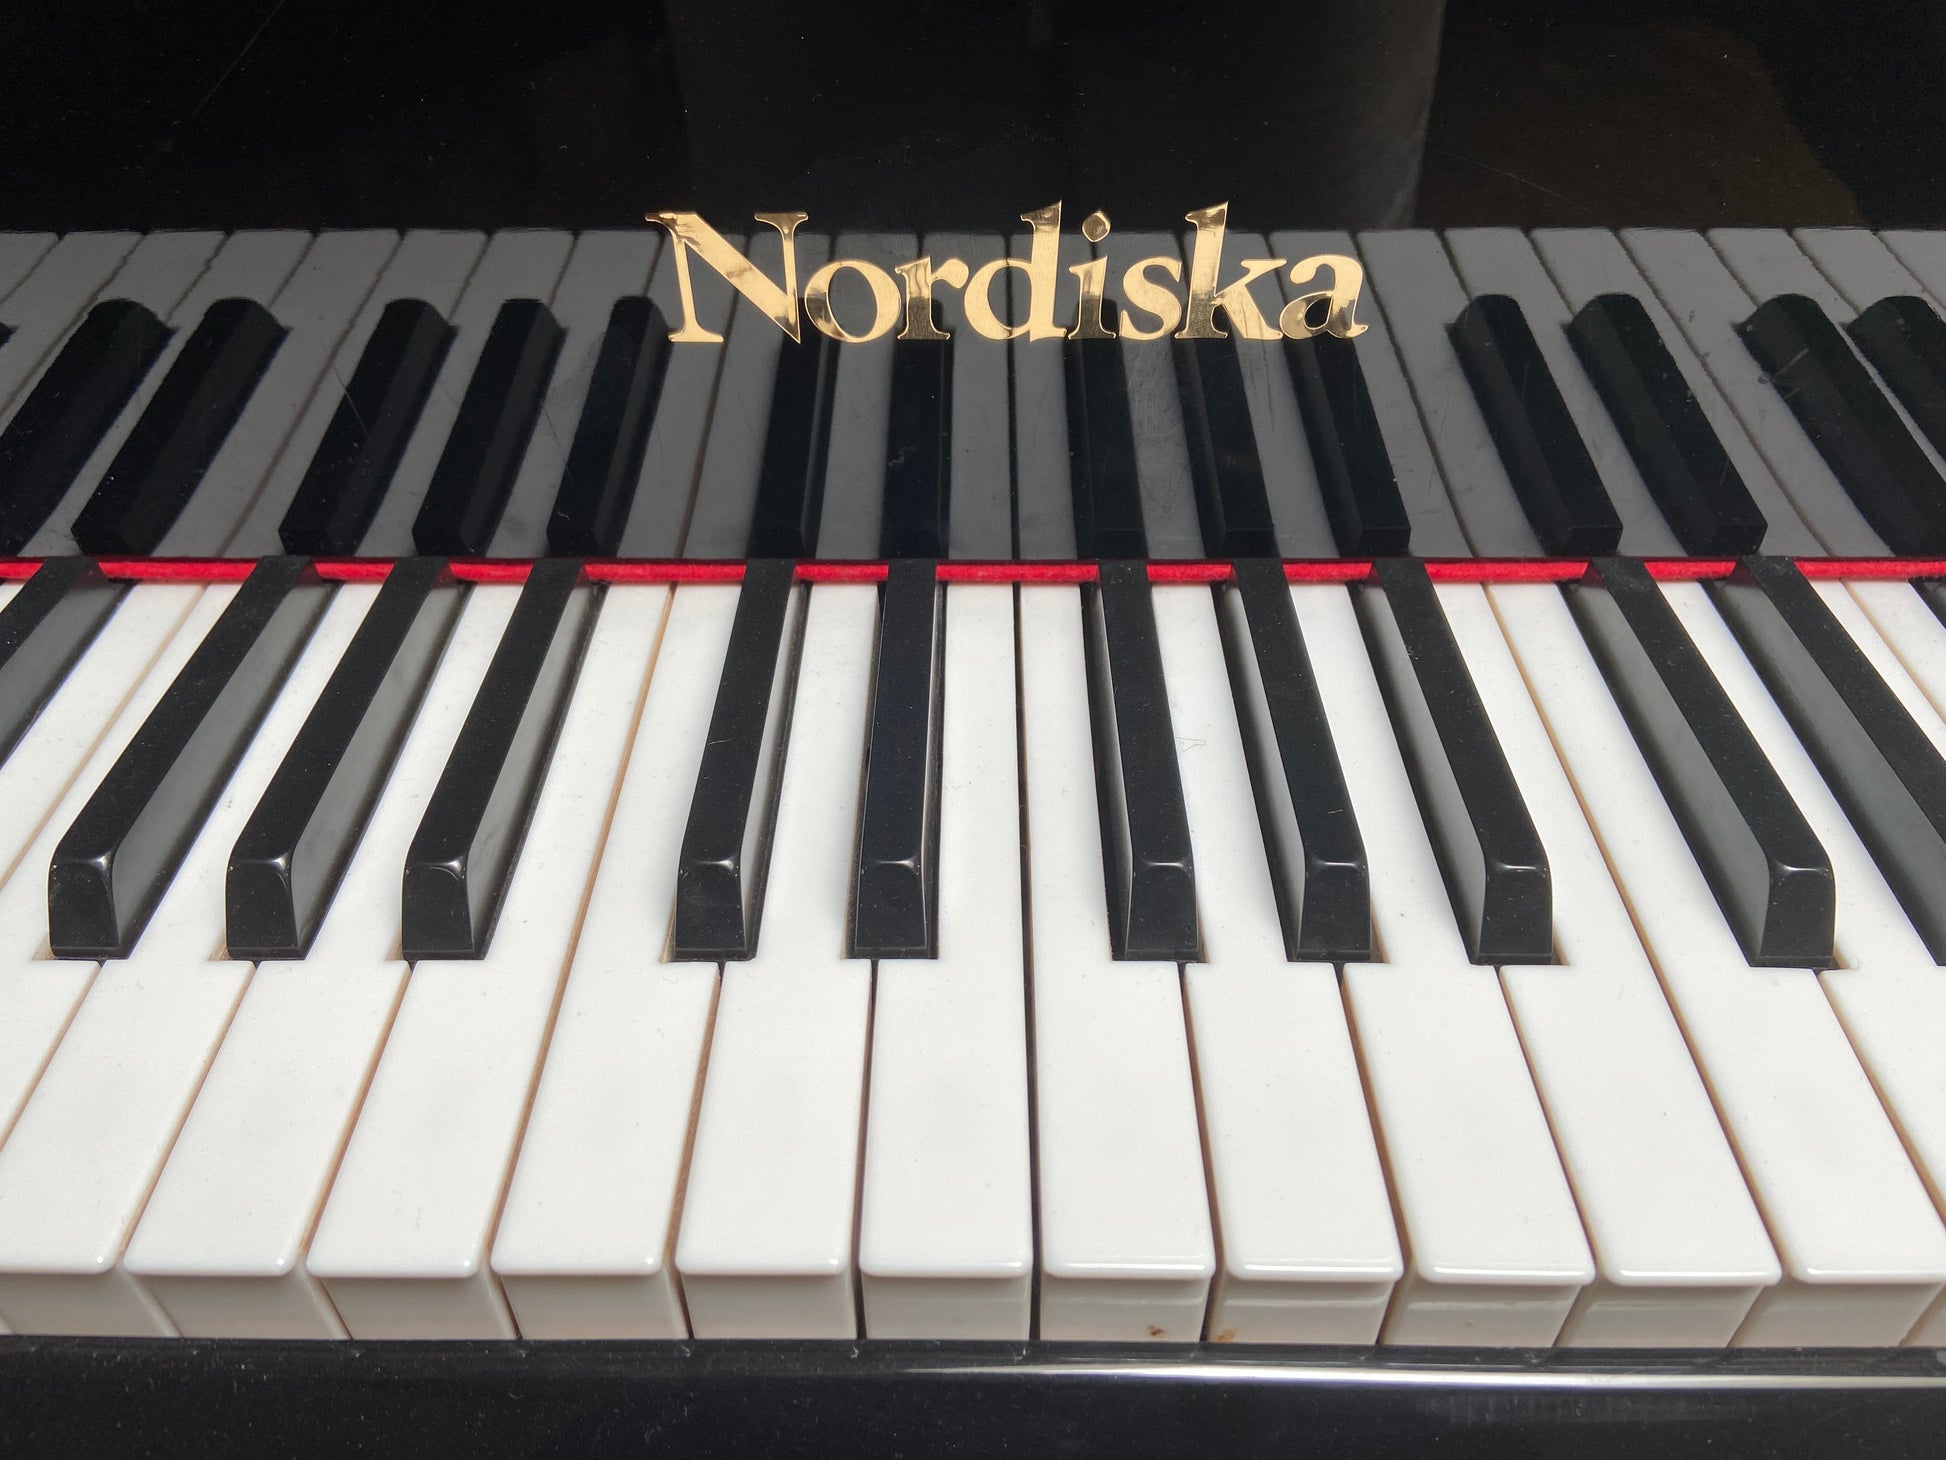 Image 5 of 1999 Nordiska Grand 5'10" / Polished Black